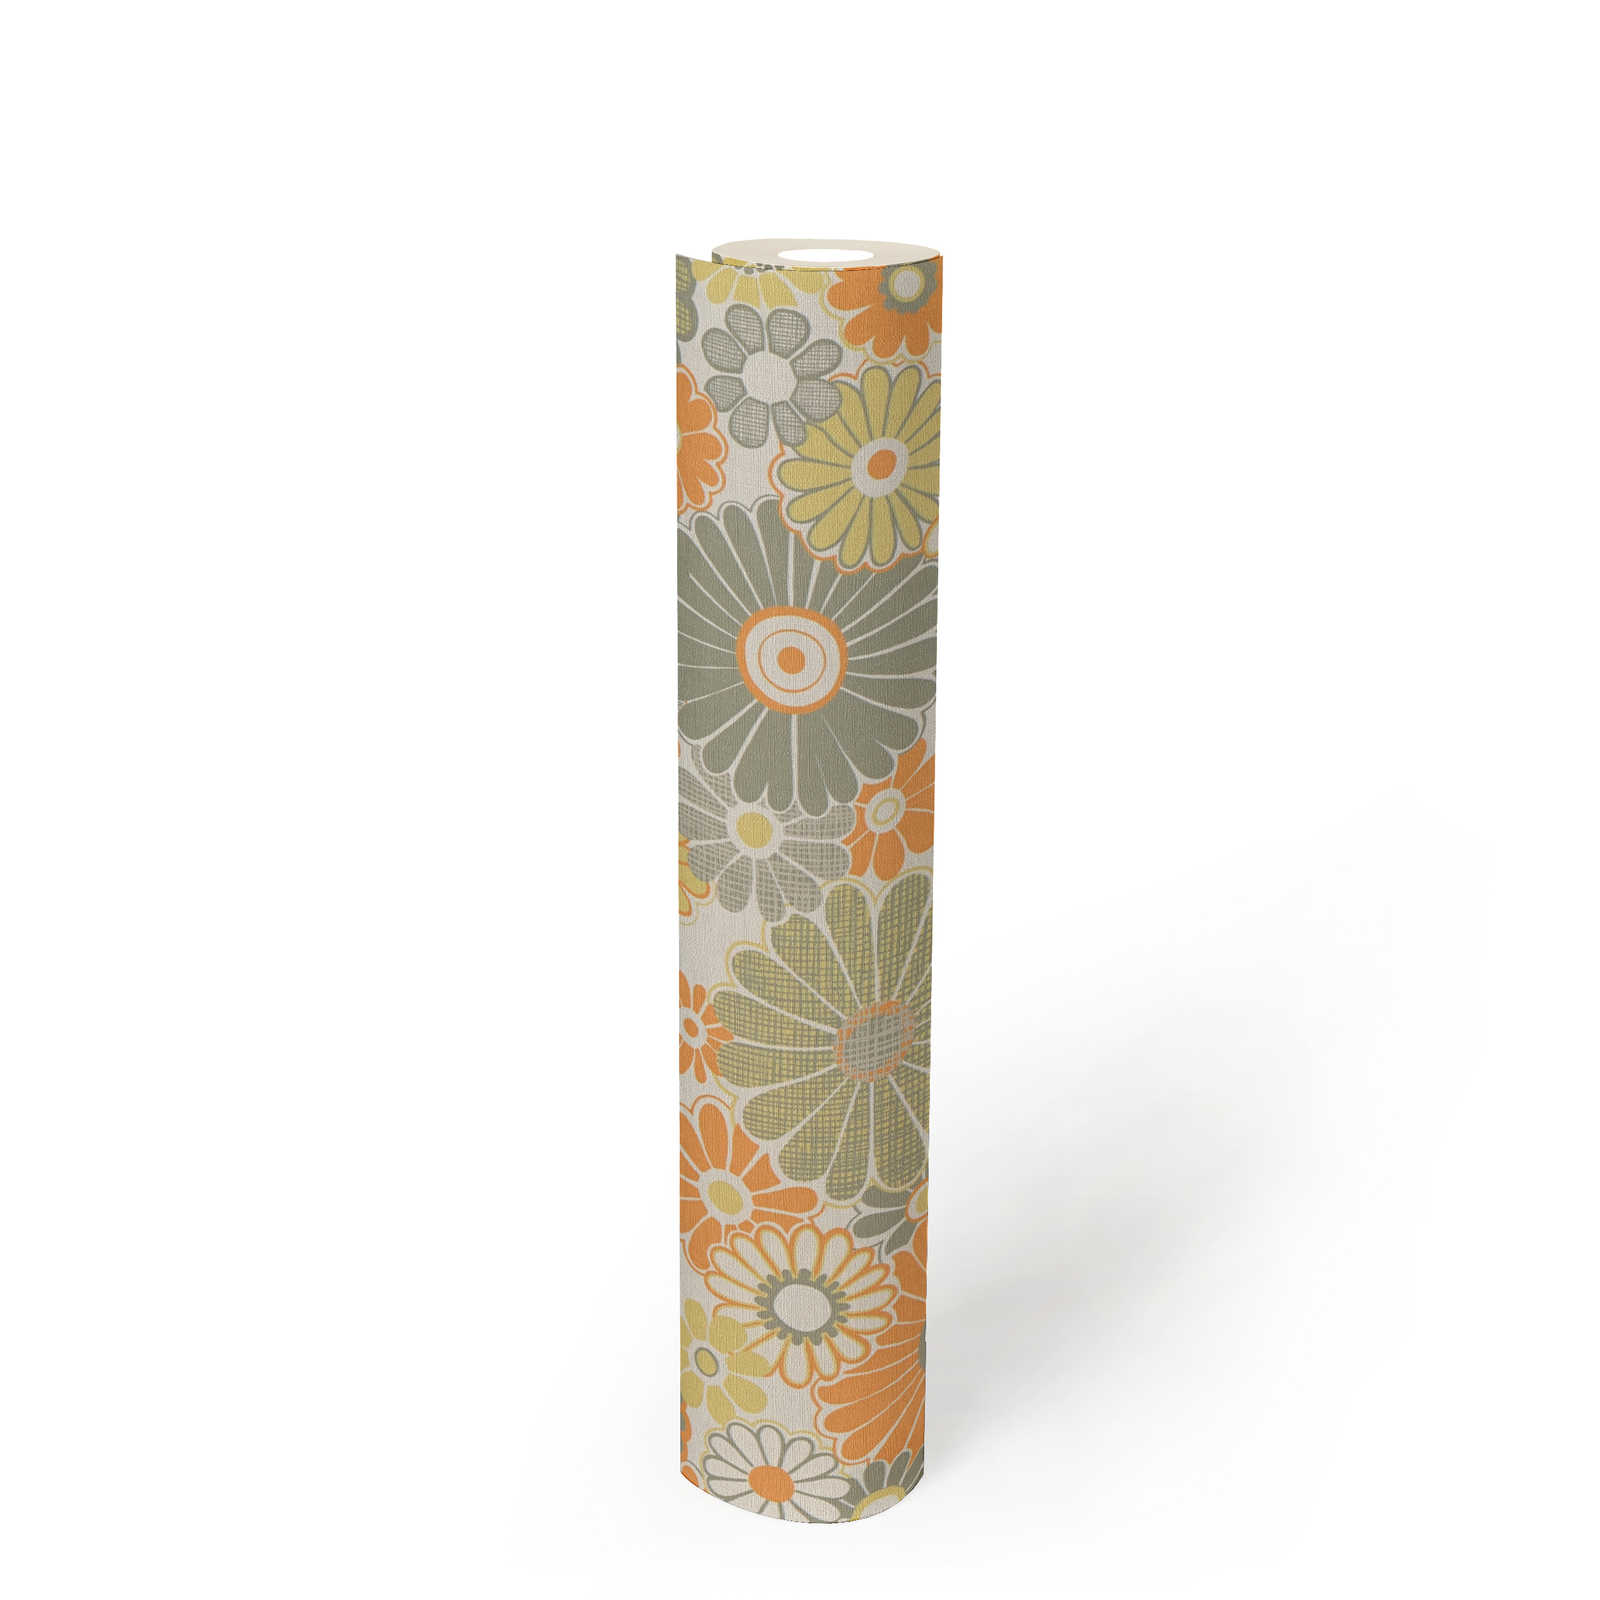             Leicht strukturierte Blumen Tapete im Retro Stil – Orange, Grün, Weiß
        